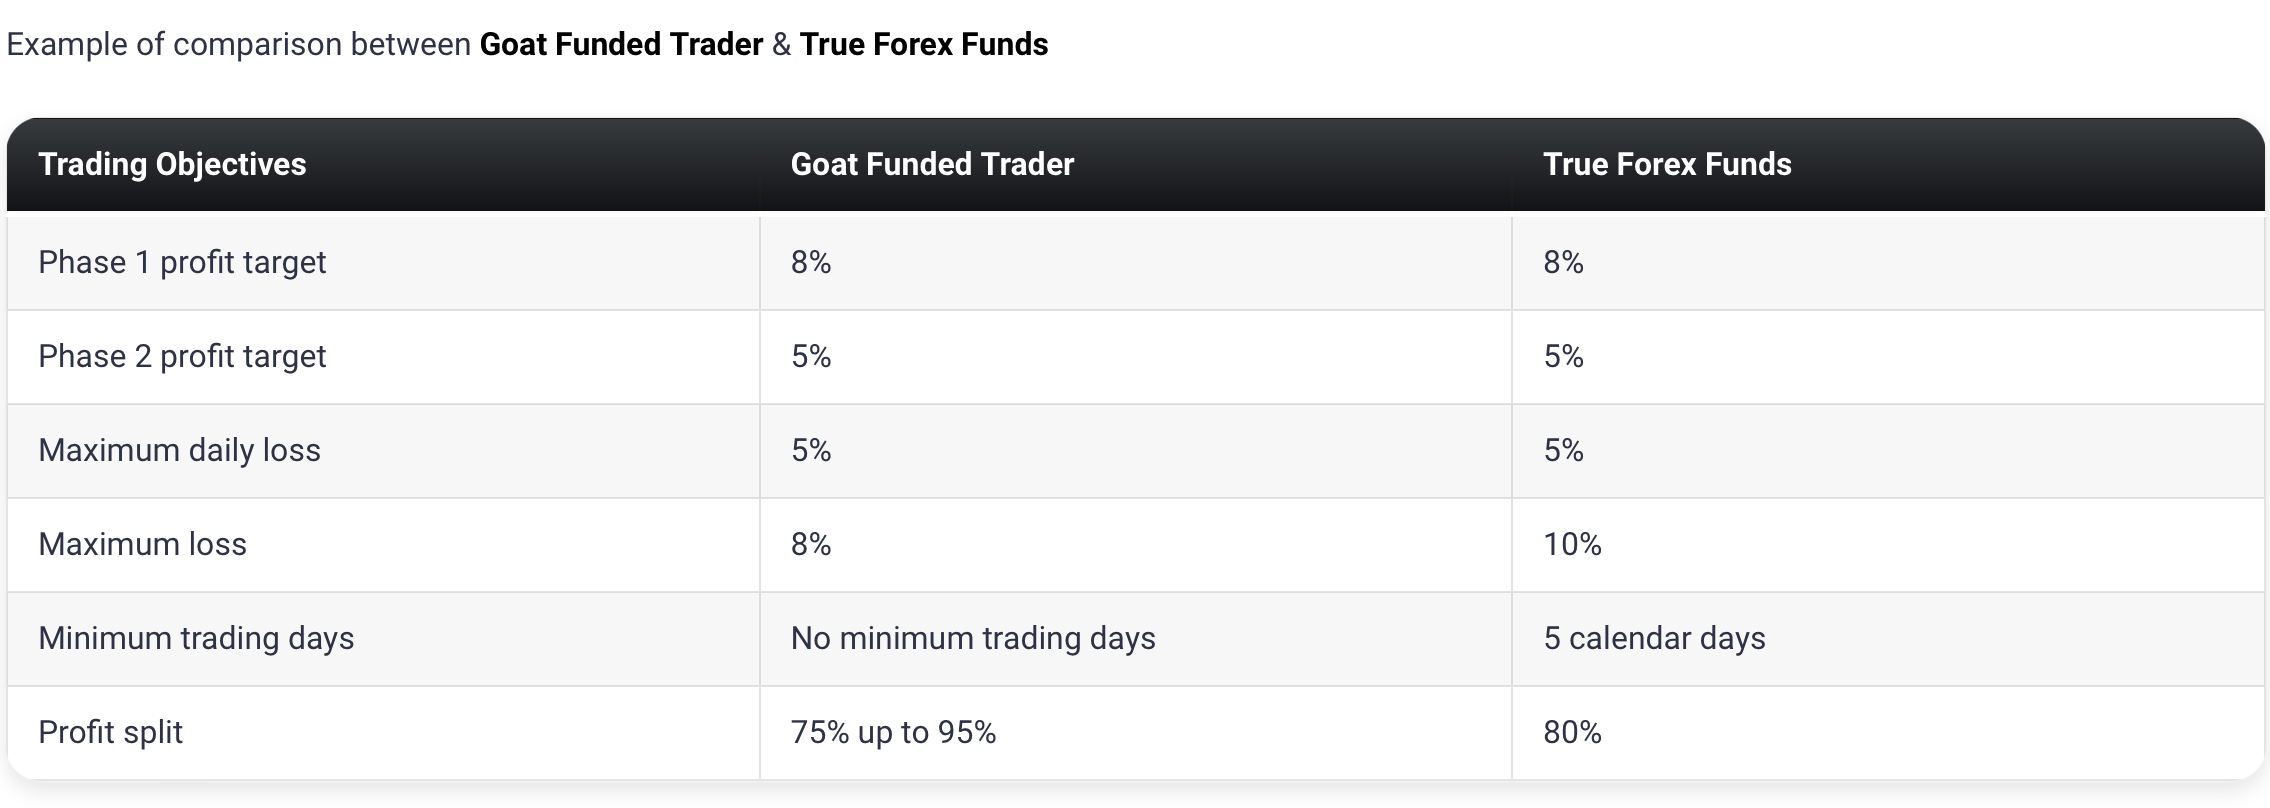 Goat Funded Trader6